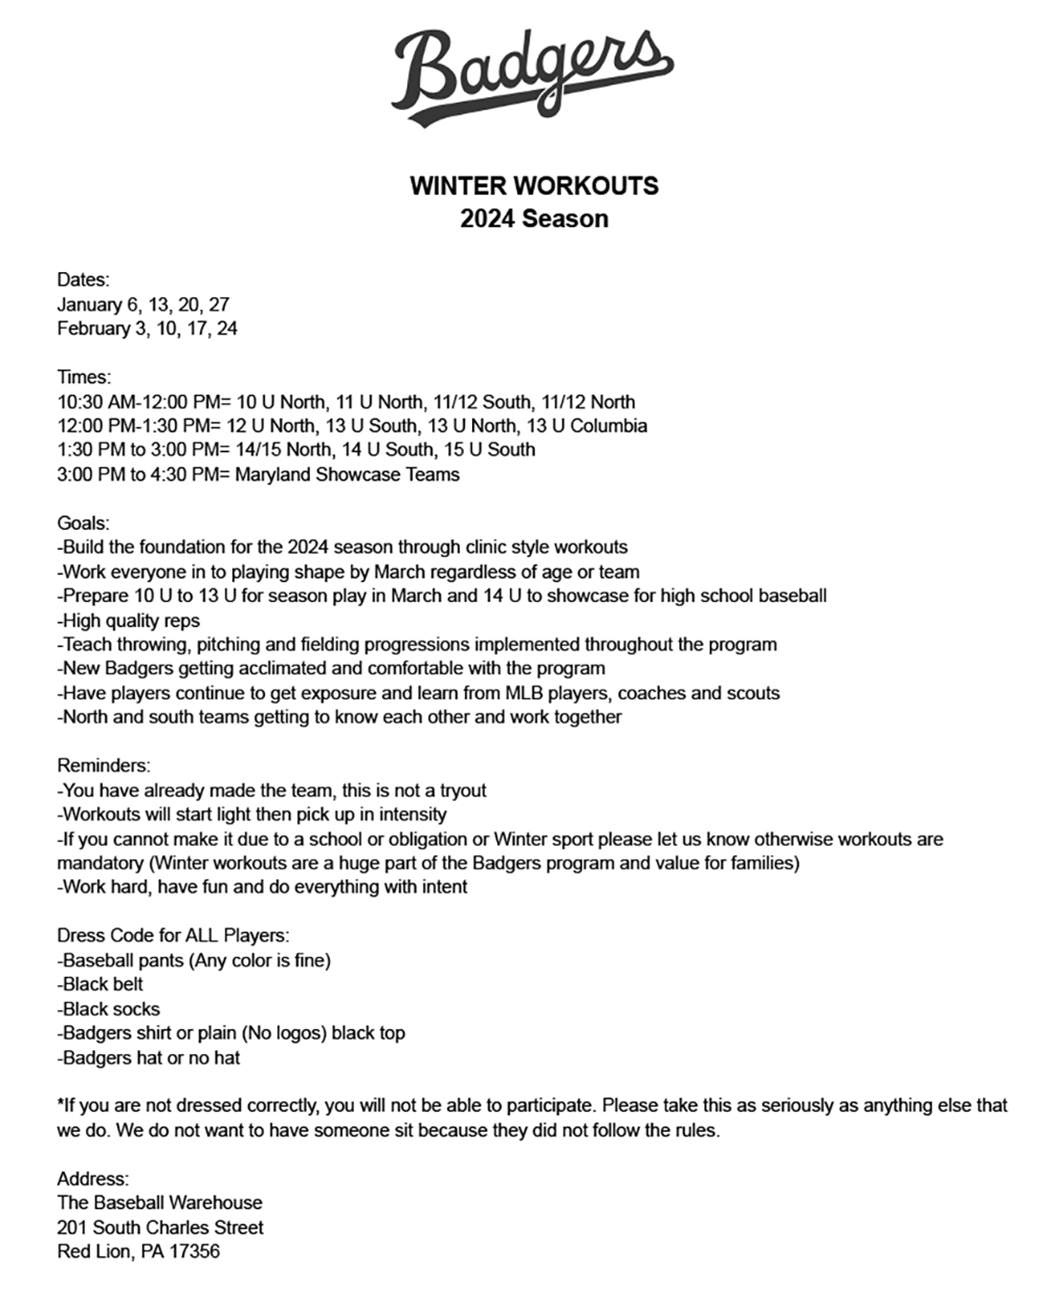 Badgers winter workout handout